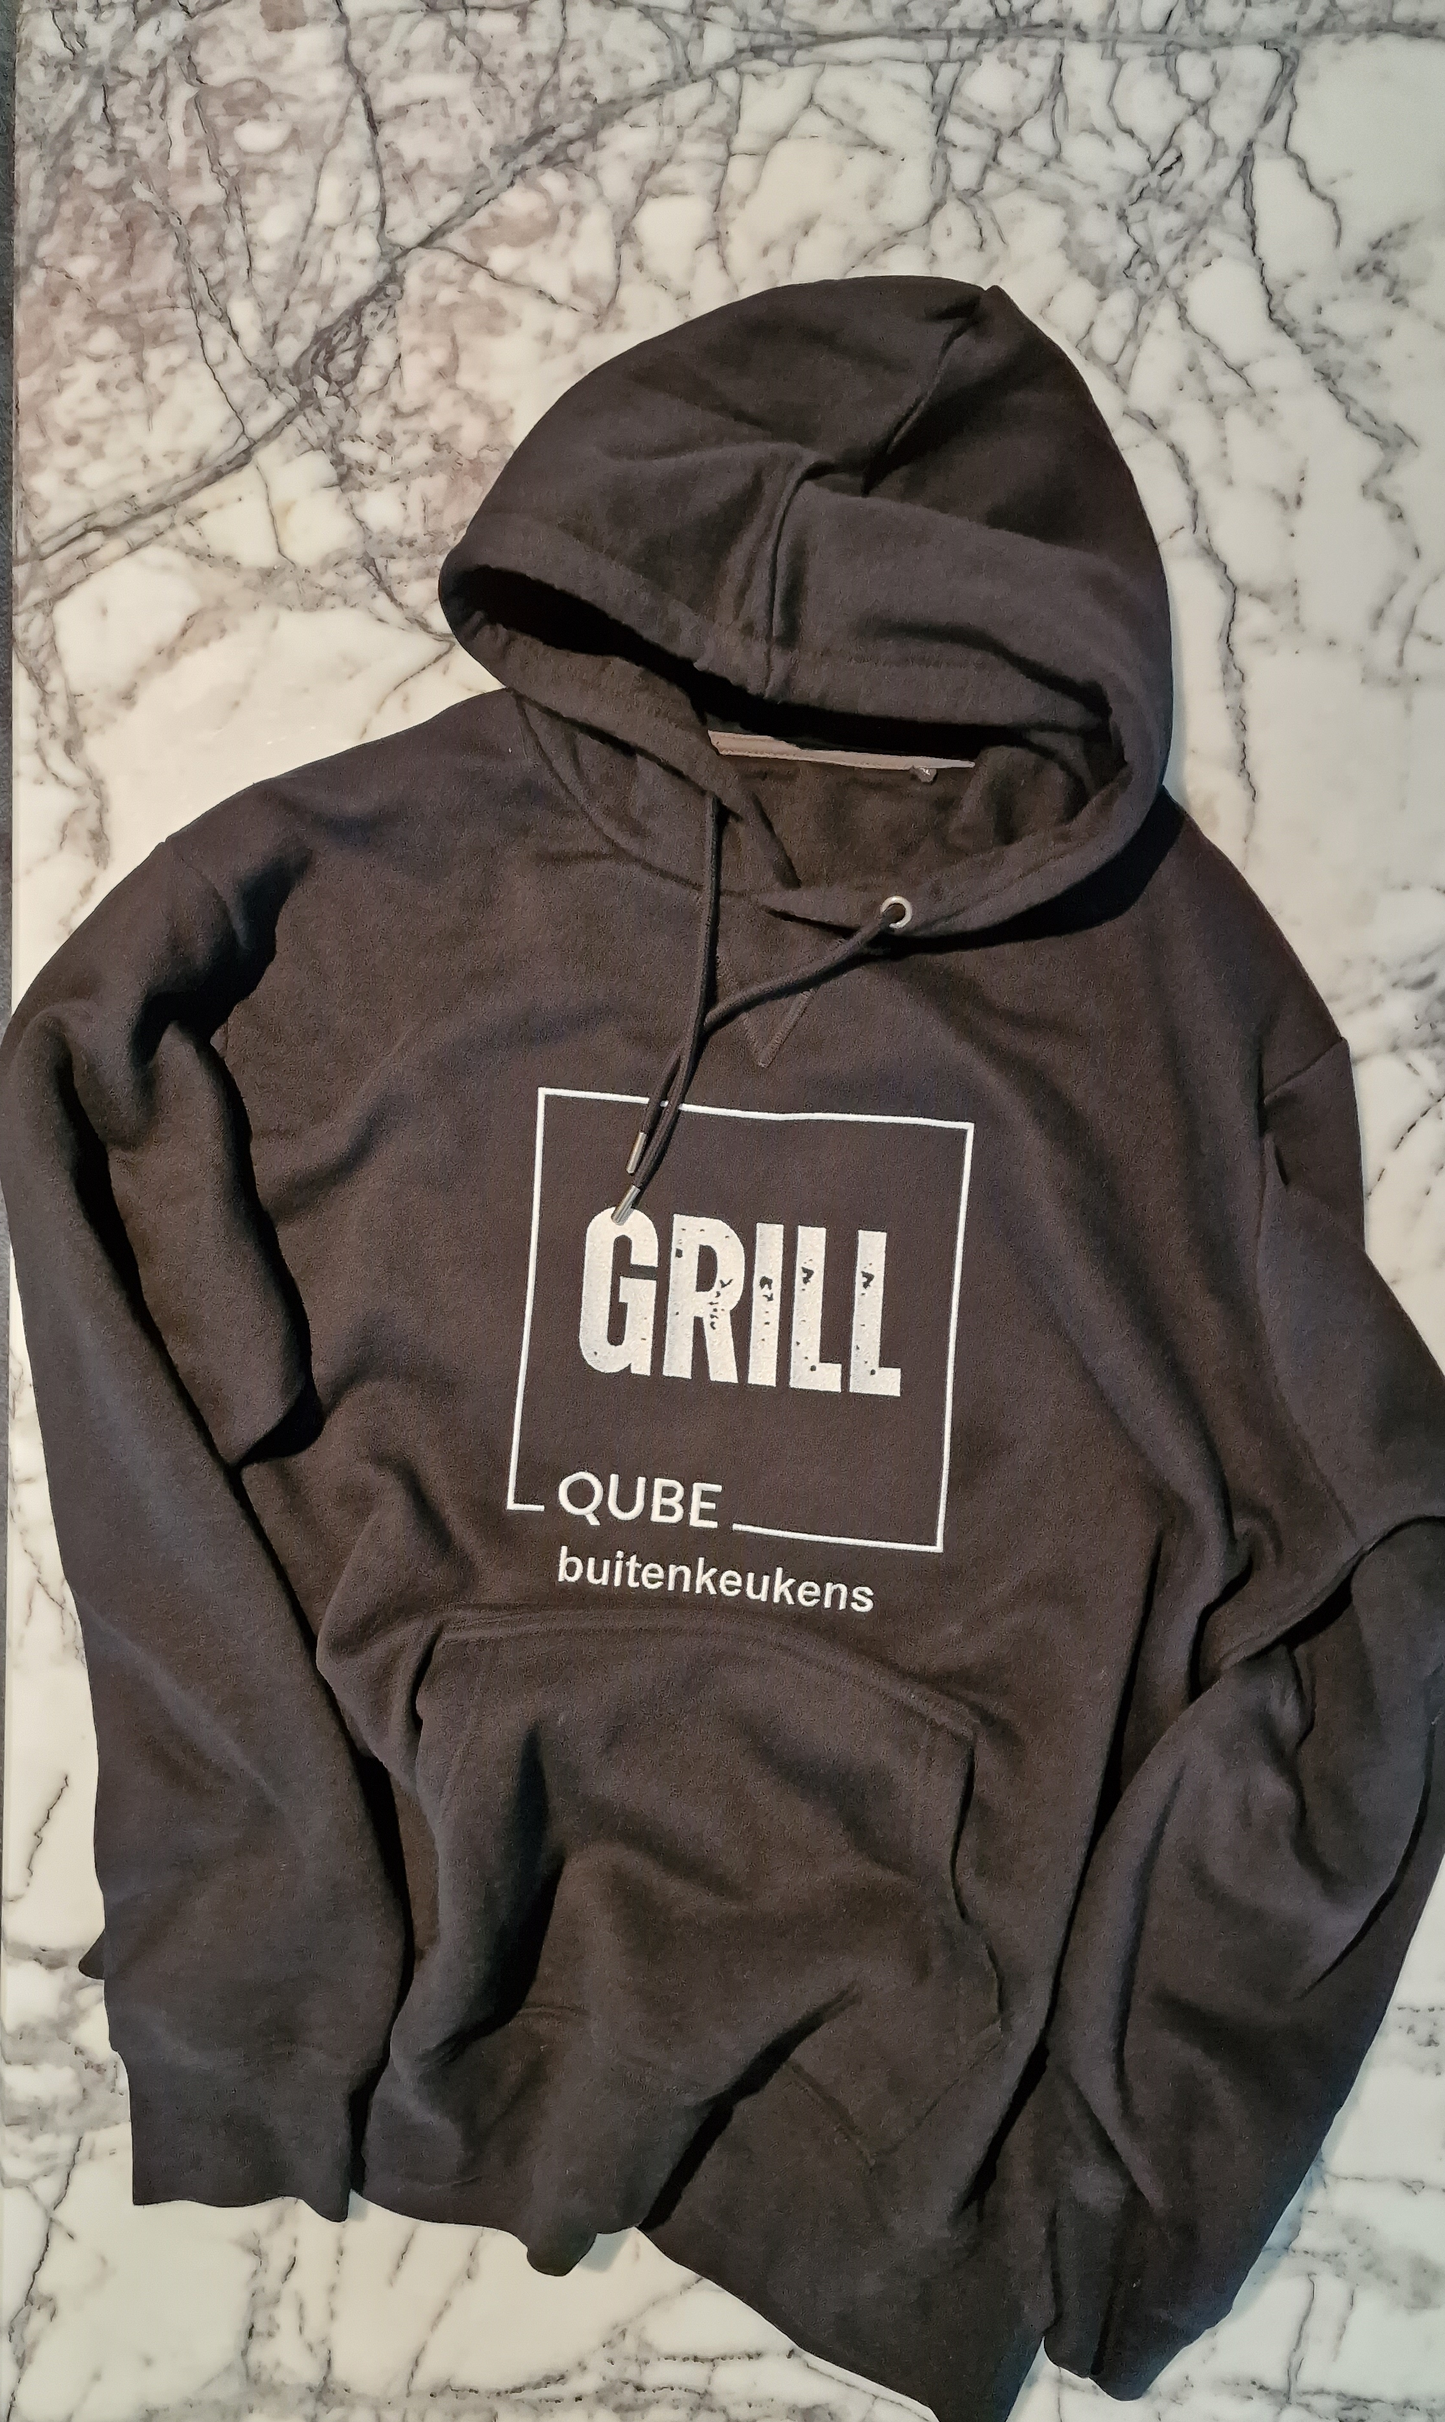 Grill Qube buitenkeukens hoodie